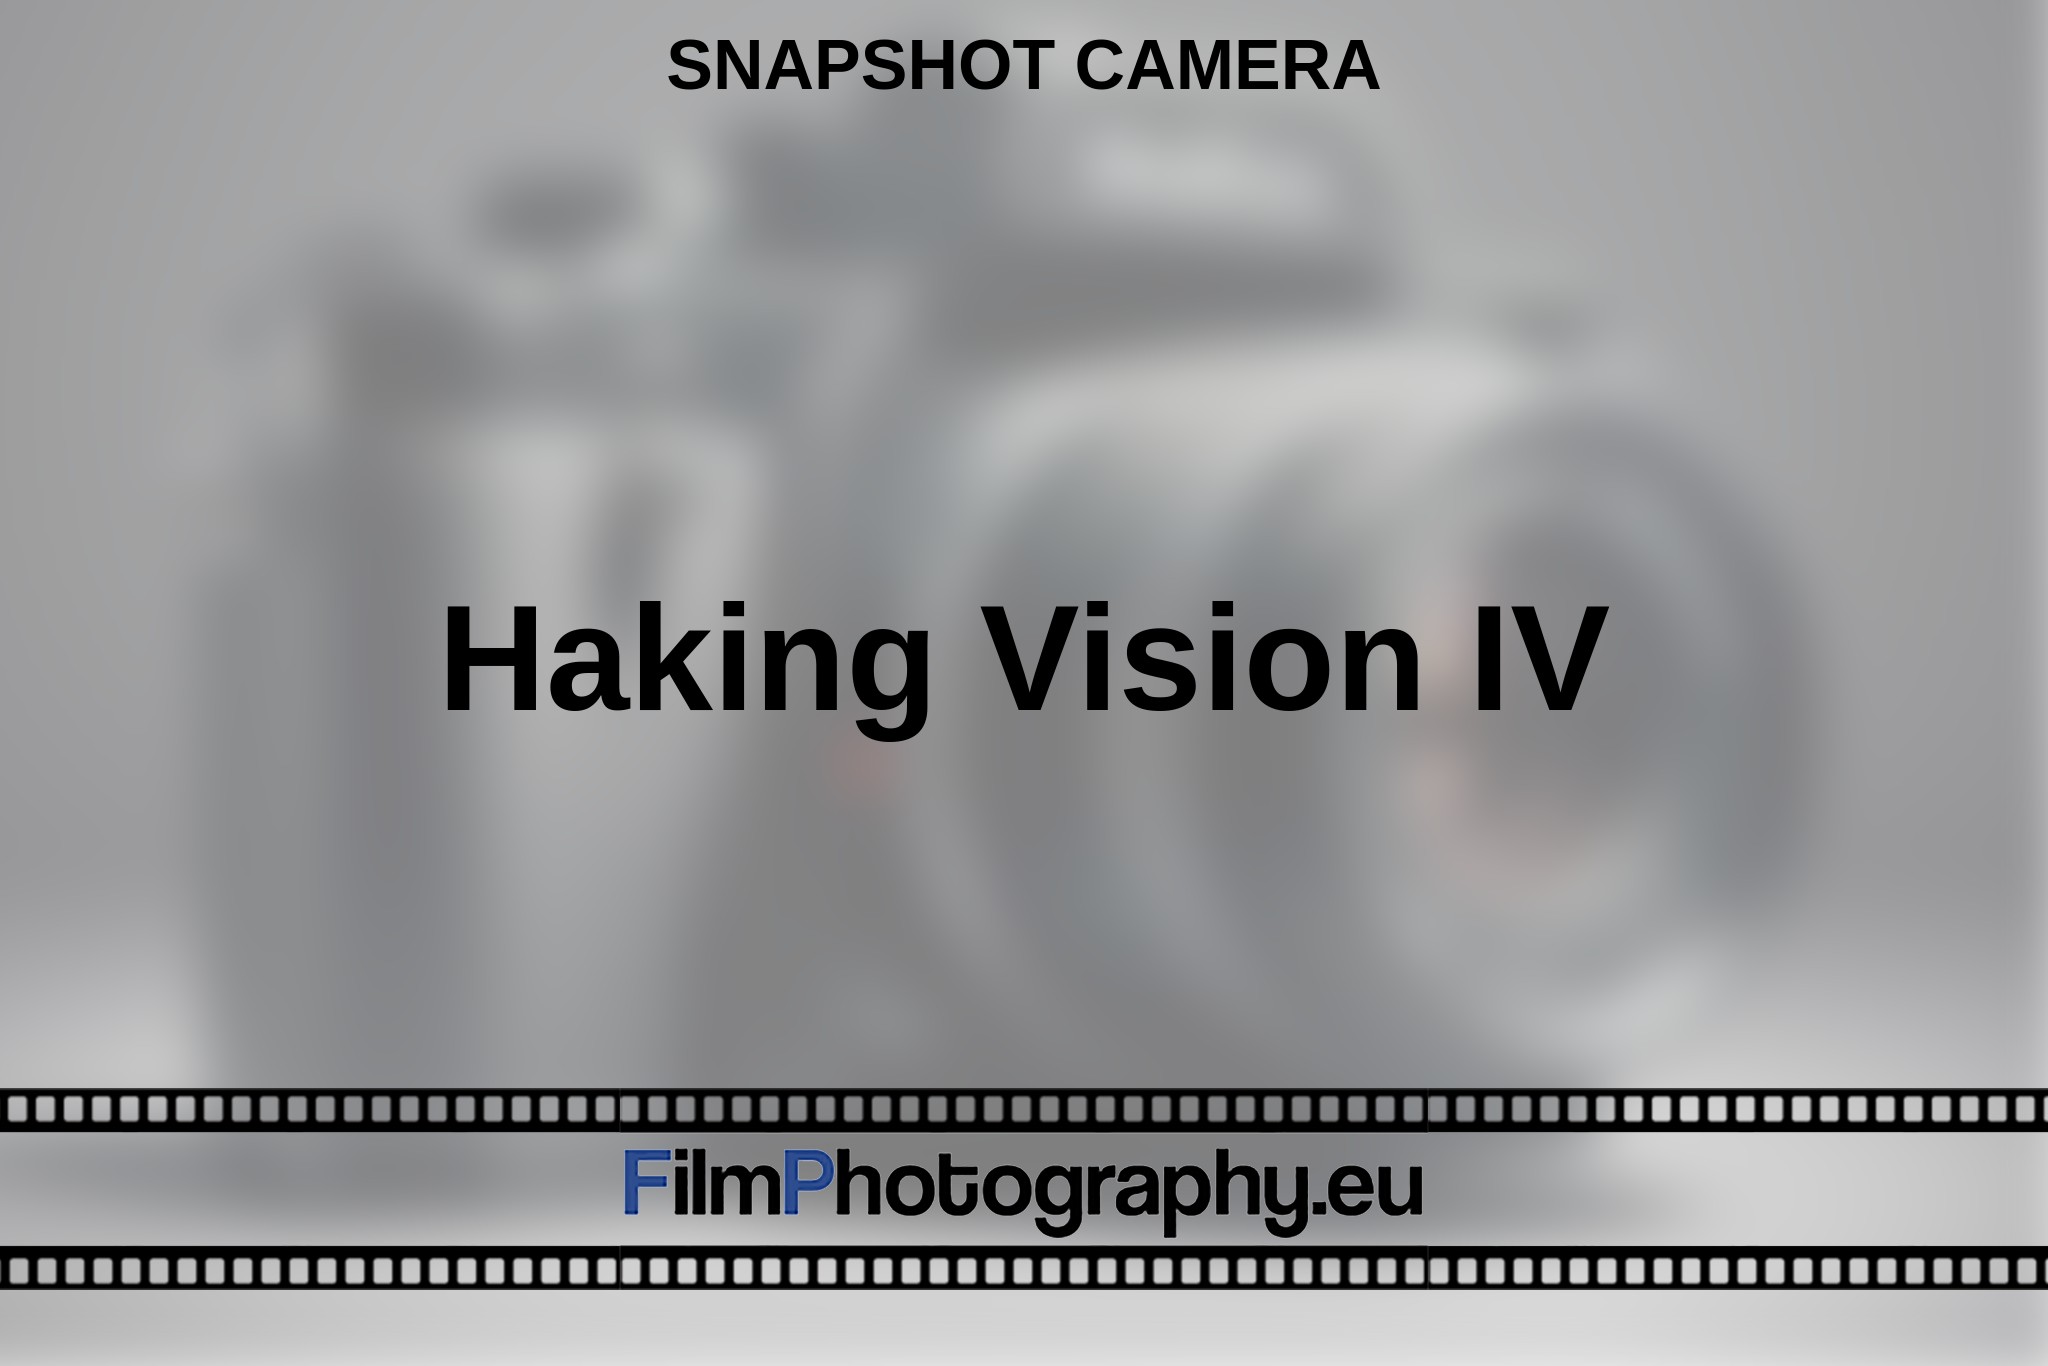 haking-vision-iv-snapshot-camera-en-bnv.jpg